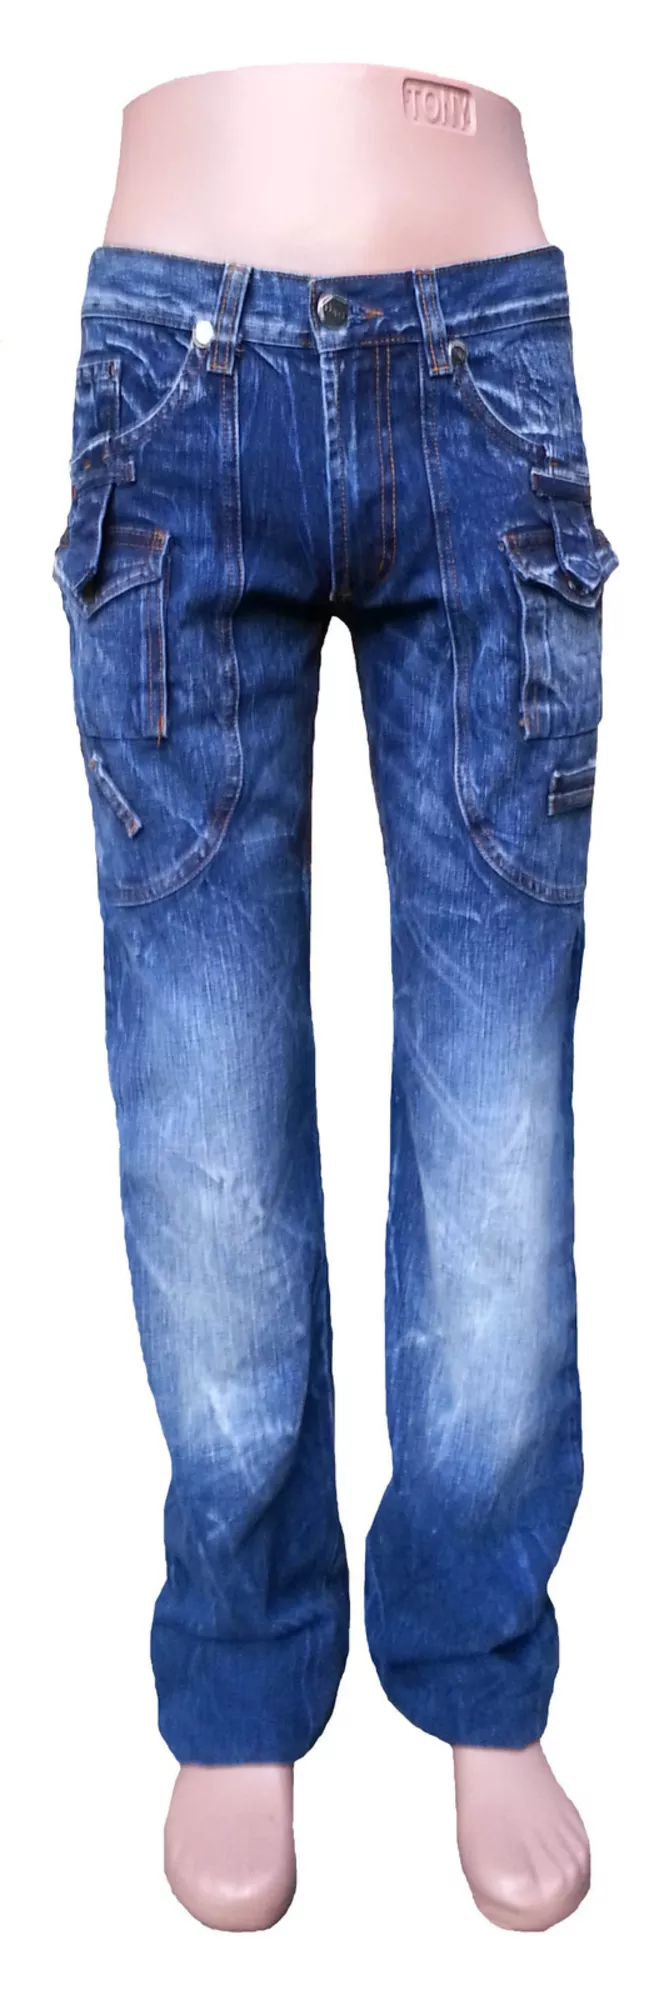 Продам мужские джинсы маленьких размеров